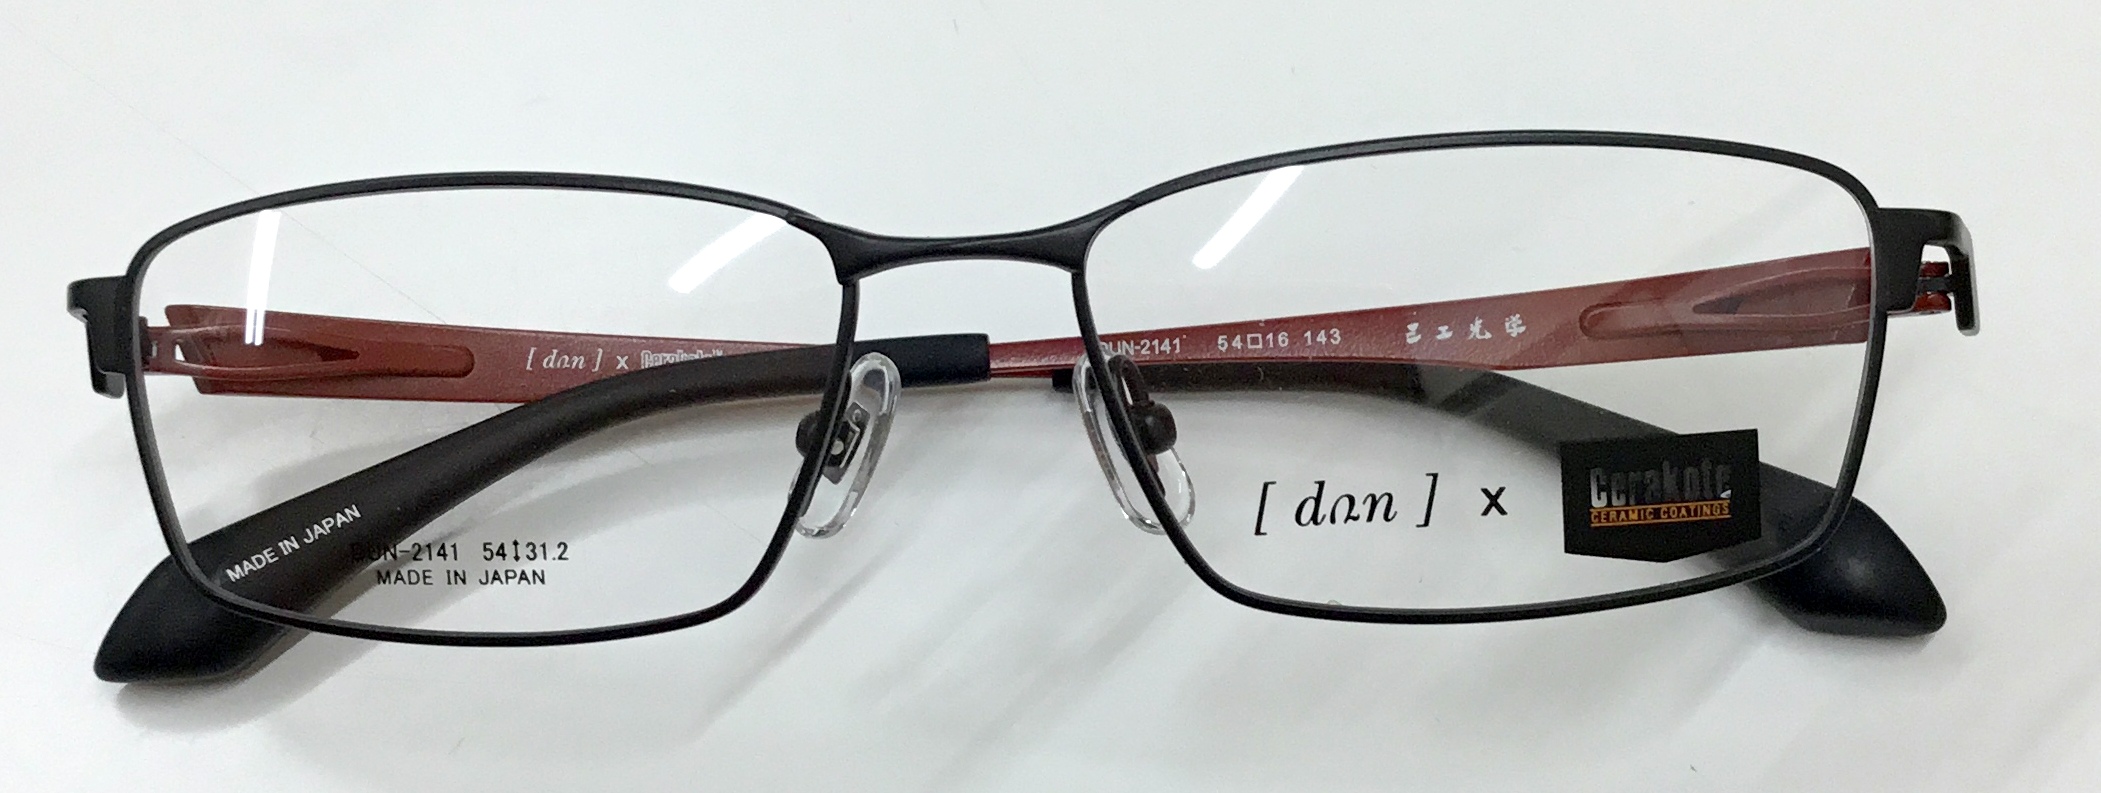 スポーツサングラス・ブランドサングラス・メガネフレームのカワチ » 優れた耐久性・流れを感じるようなデザイン男性用メガネ『ドゥアン2141』